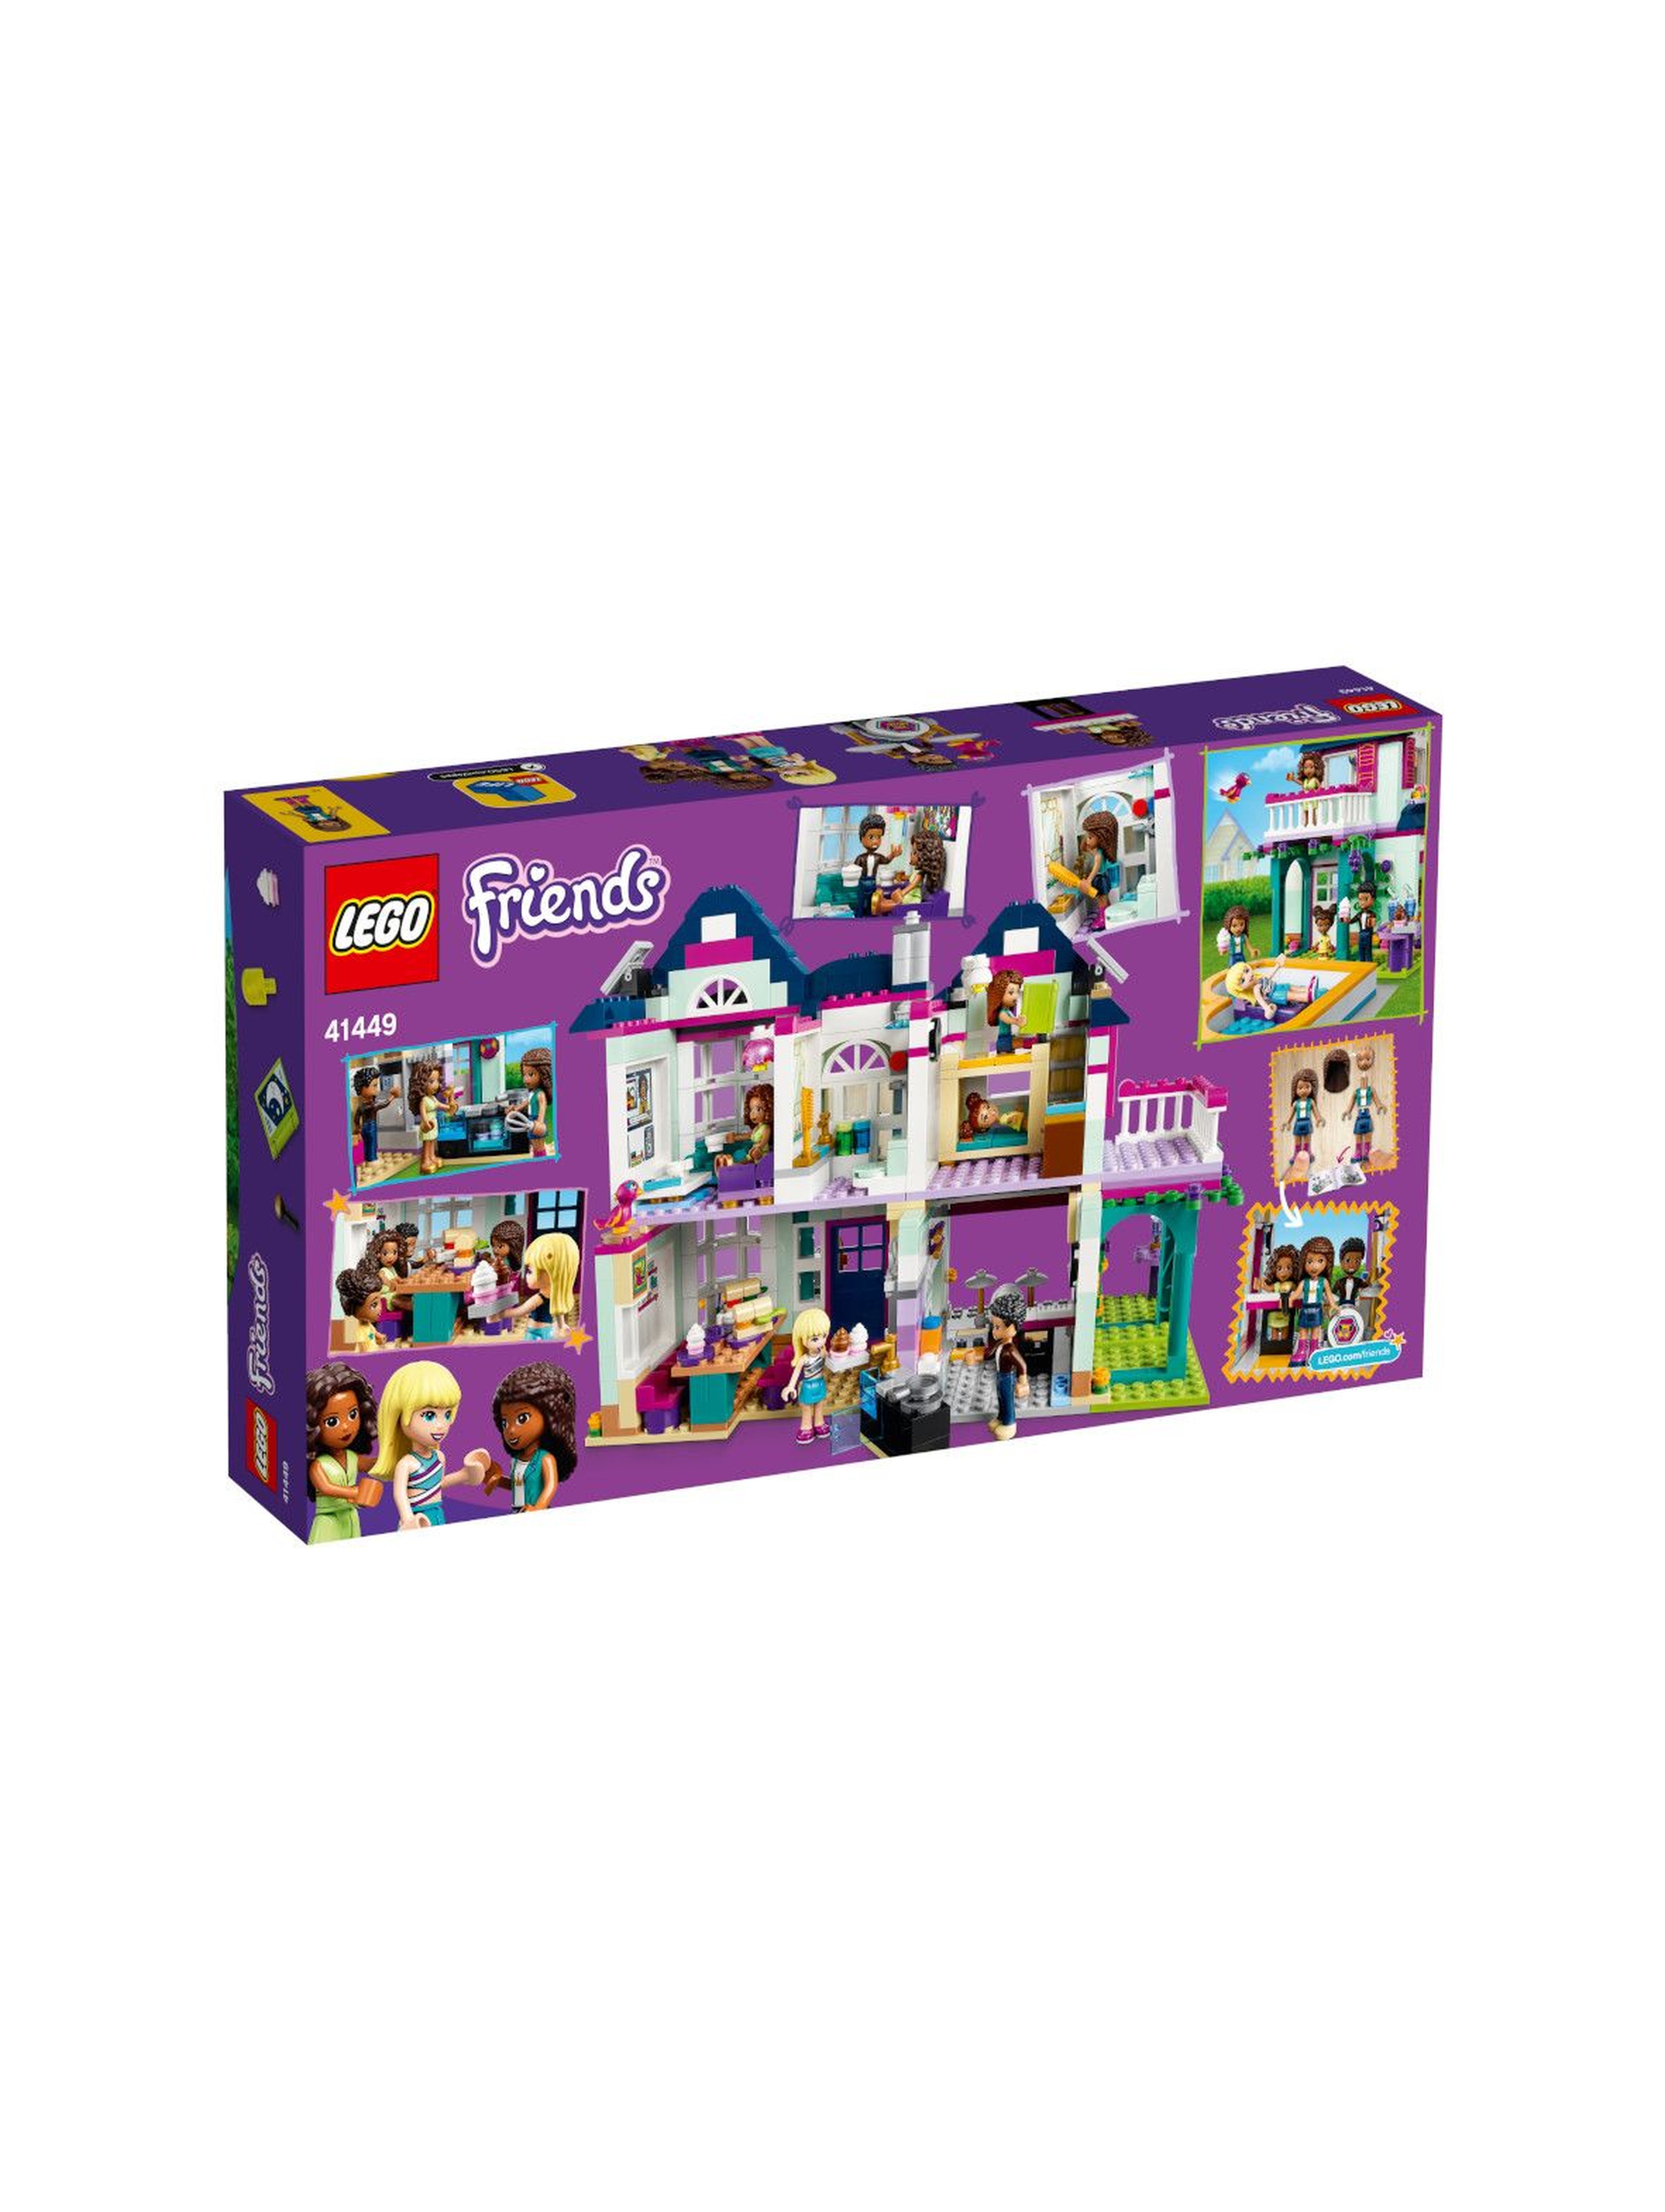 Klocki LEGO Friends - Dom rodzinny Andrei - 802 el